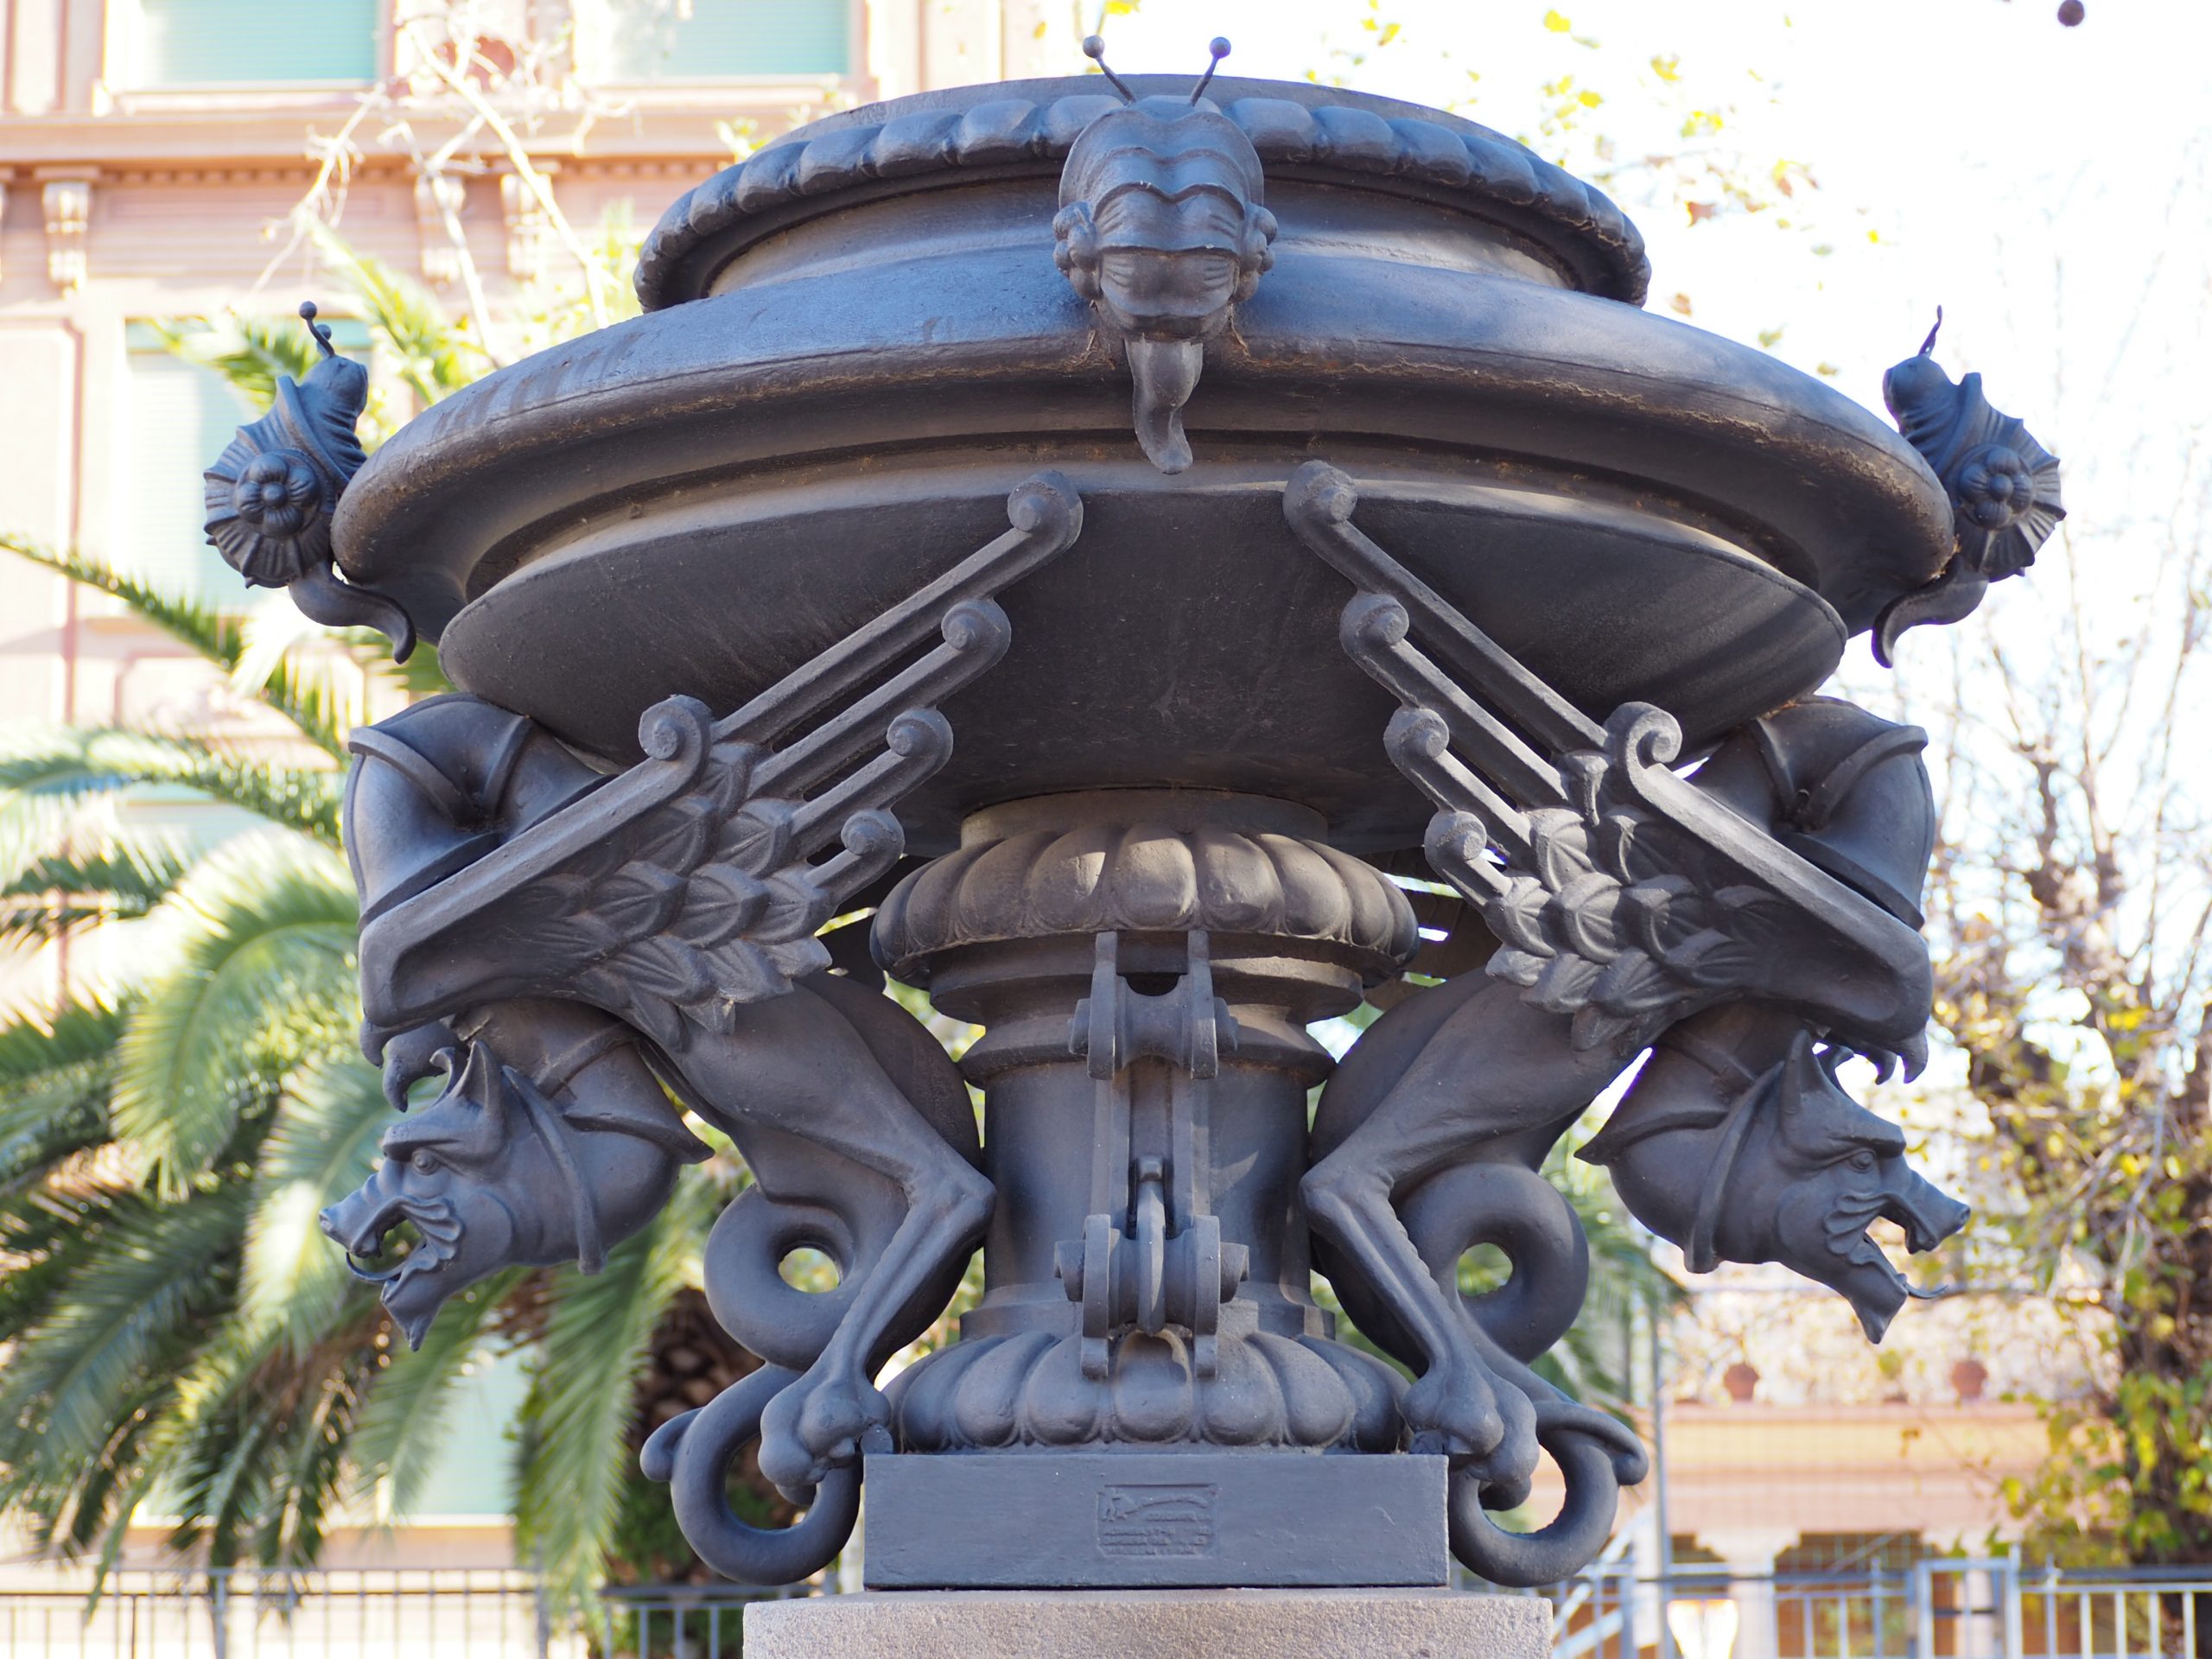 dragones y caracoles en una vasija de hierro en el paseo del arco de triunfo de Barcelona. Viajar en familia